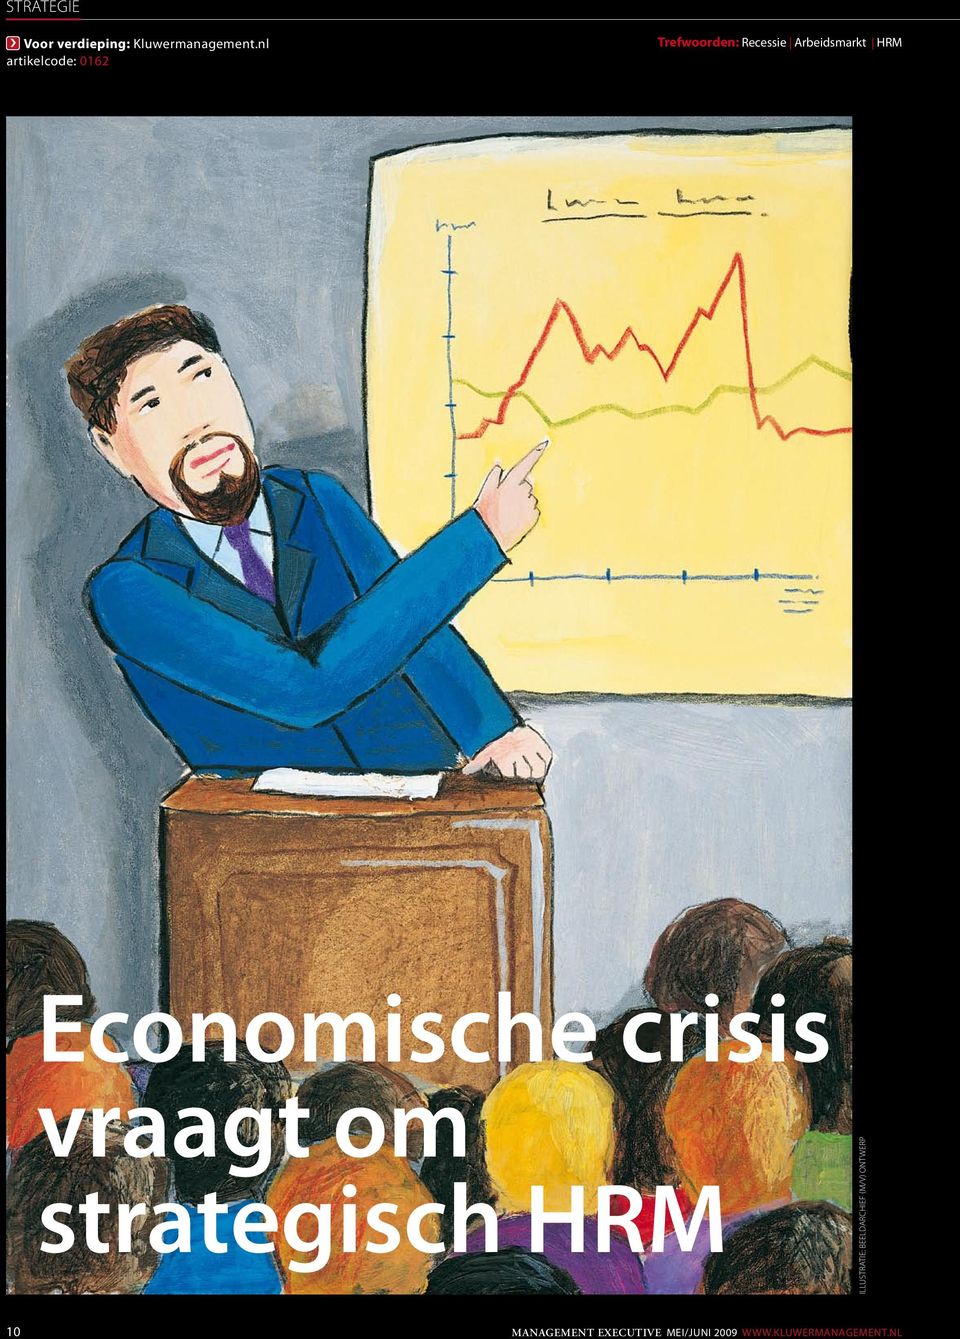 Economische crisis vraagt om strategisch HRM illustratie: